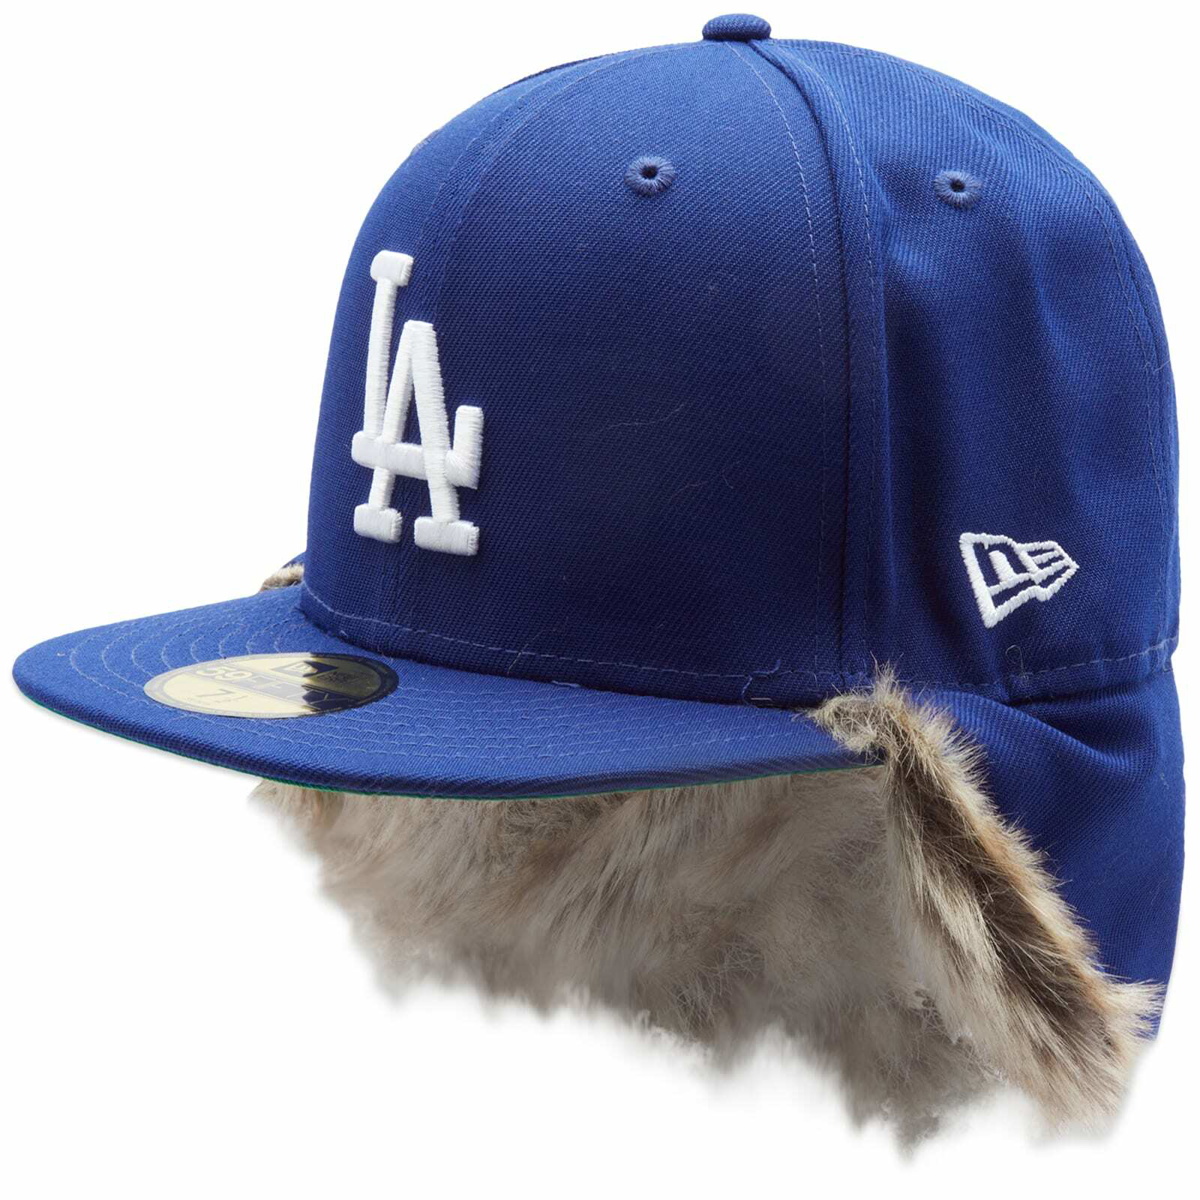 ny la new era hat